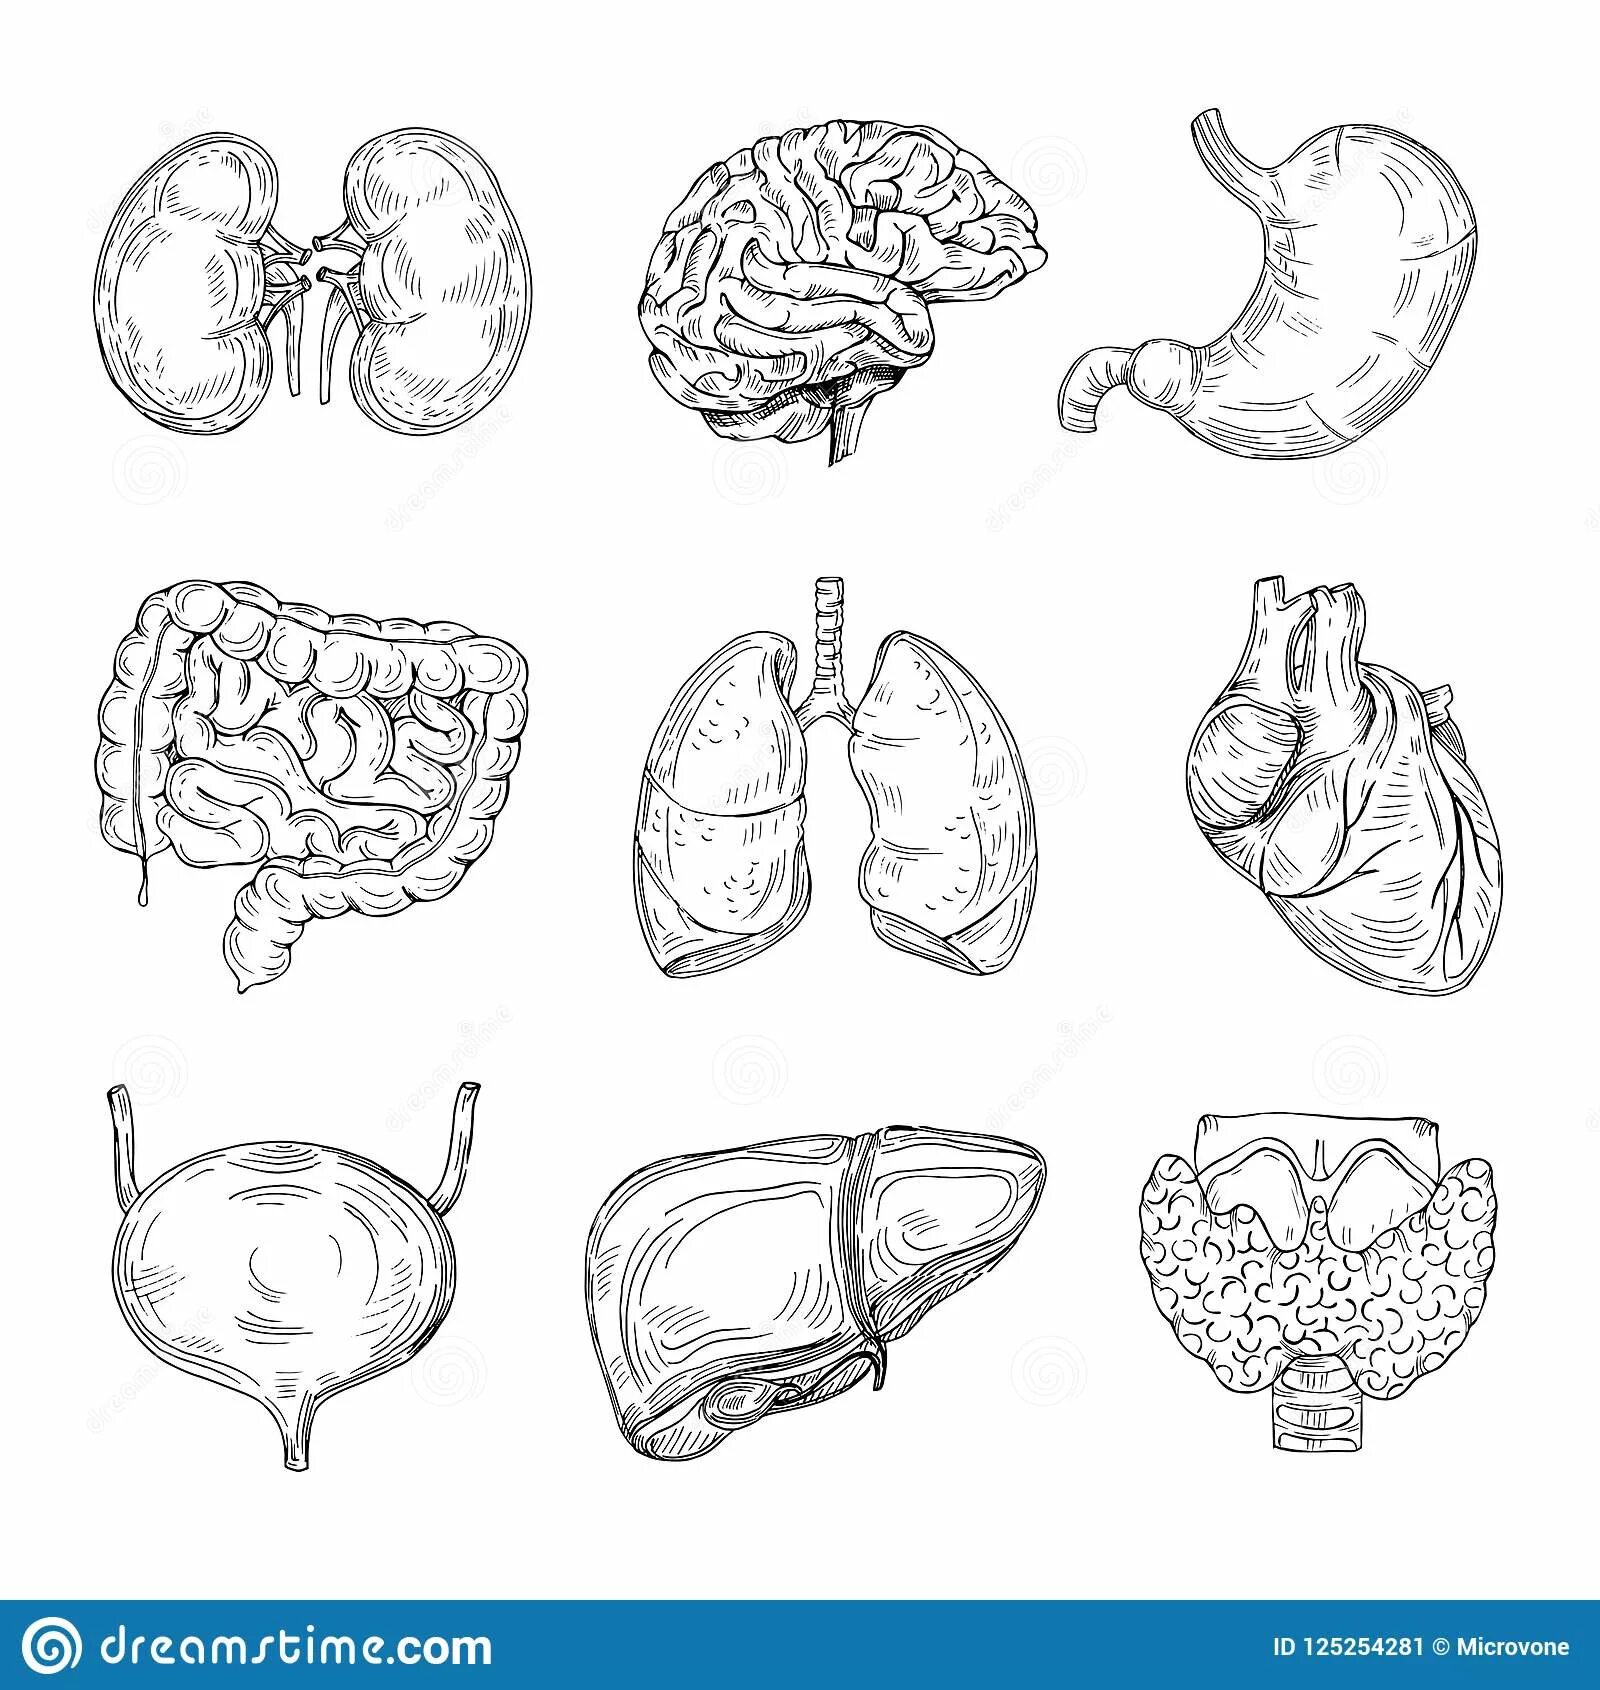 Human structure internal organs #11